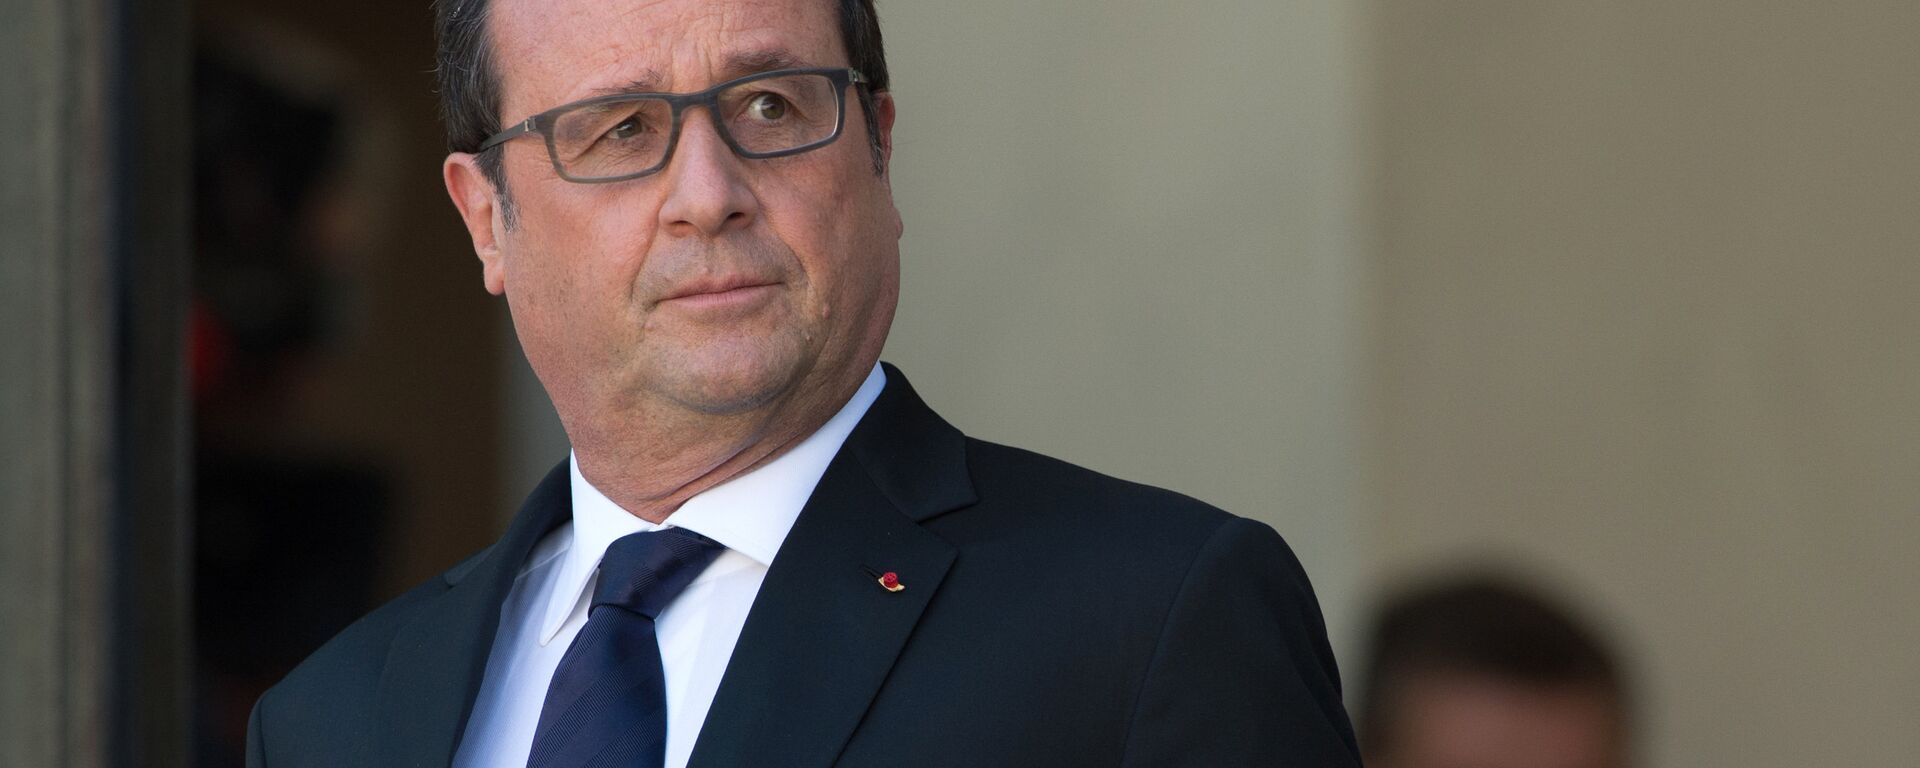 François Hollande, président français - Sputnik Afrique, 1920, 22.09.2018